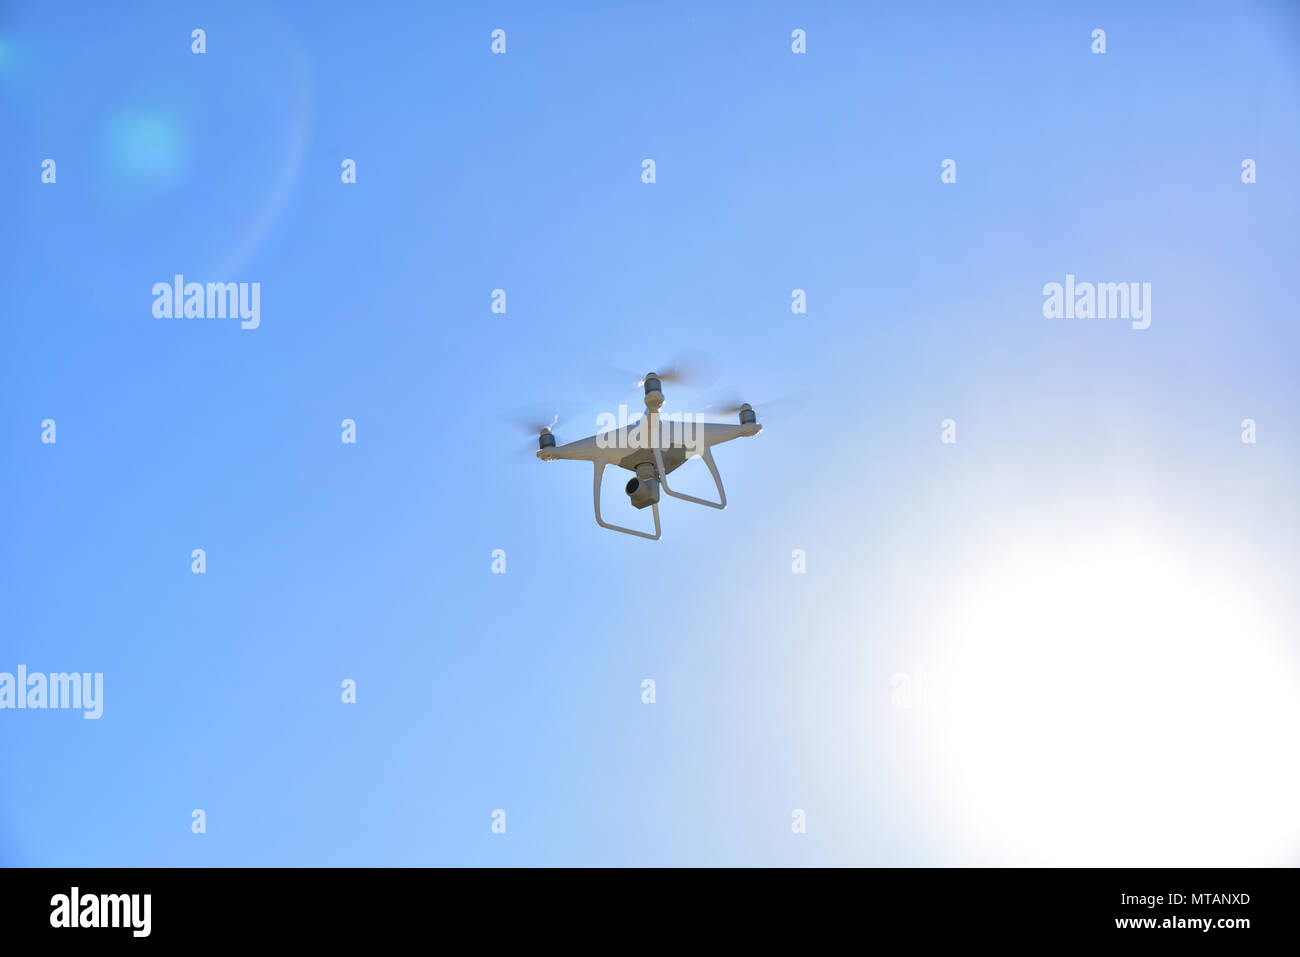 Professionelle drone mit Kamera für Foto- und Videoaufnahmen fliegen mit dem Himmel im Hintergrund Stockfoto